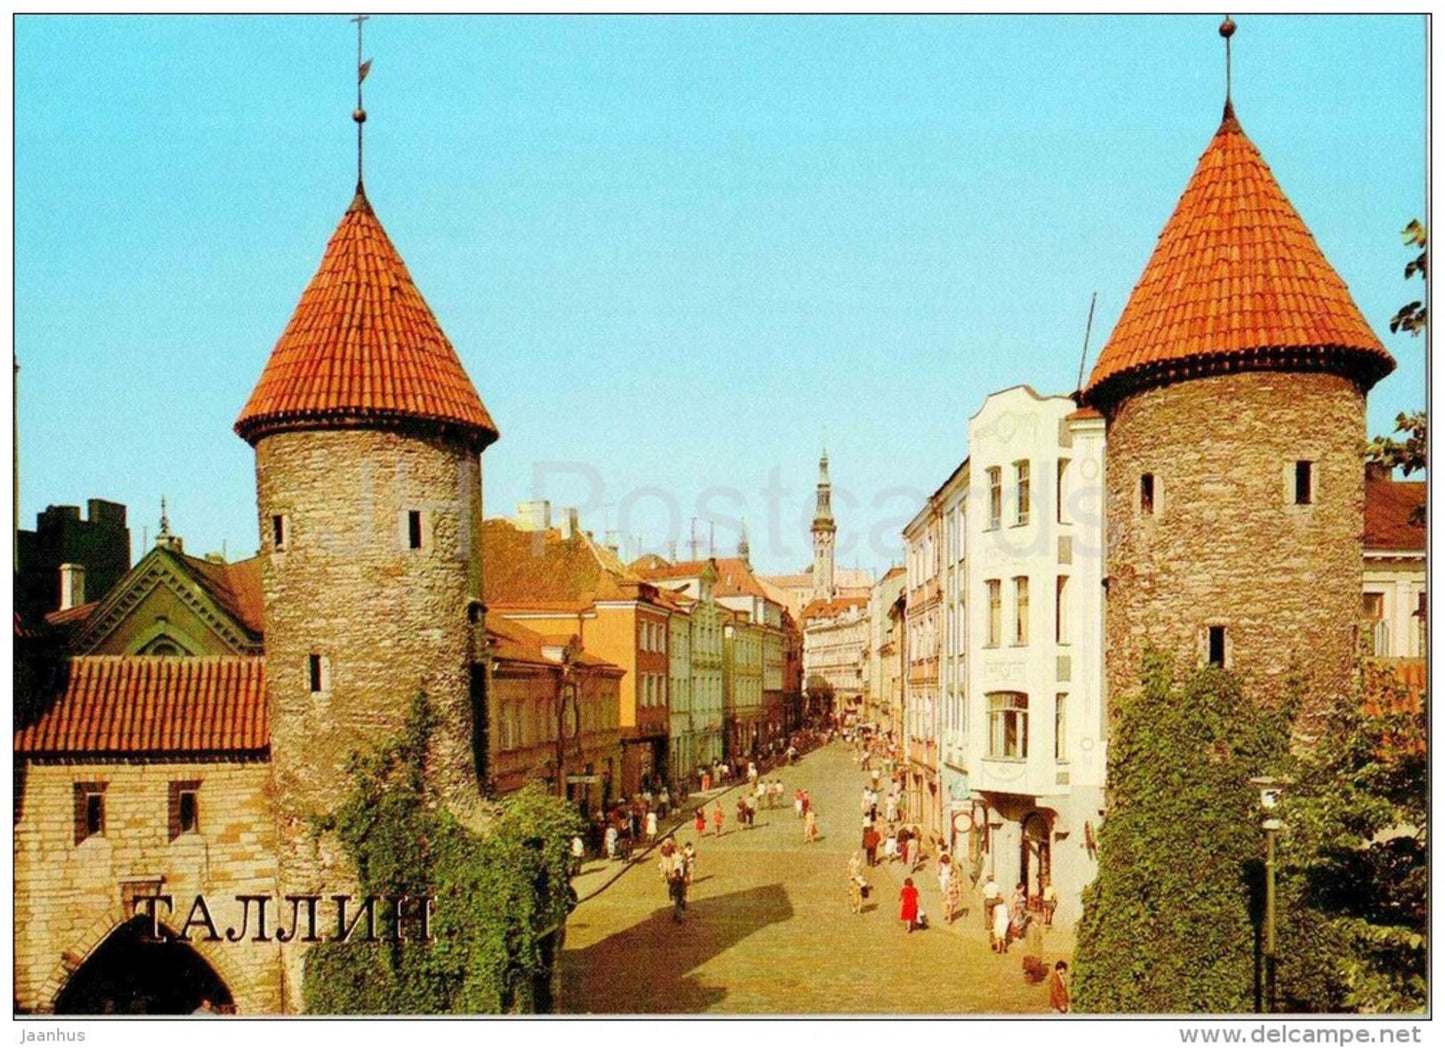 Viru Gates - Old Town - Tallinn - 1987 - Estonia USSR - unused - JH Postcards